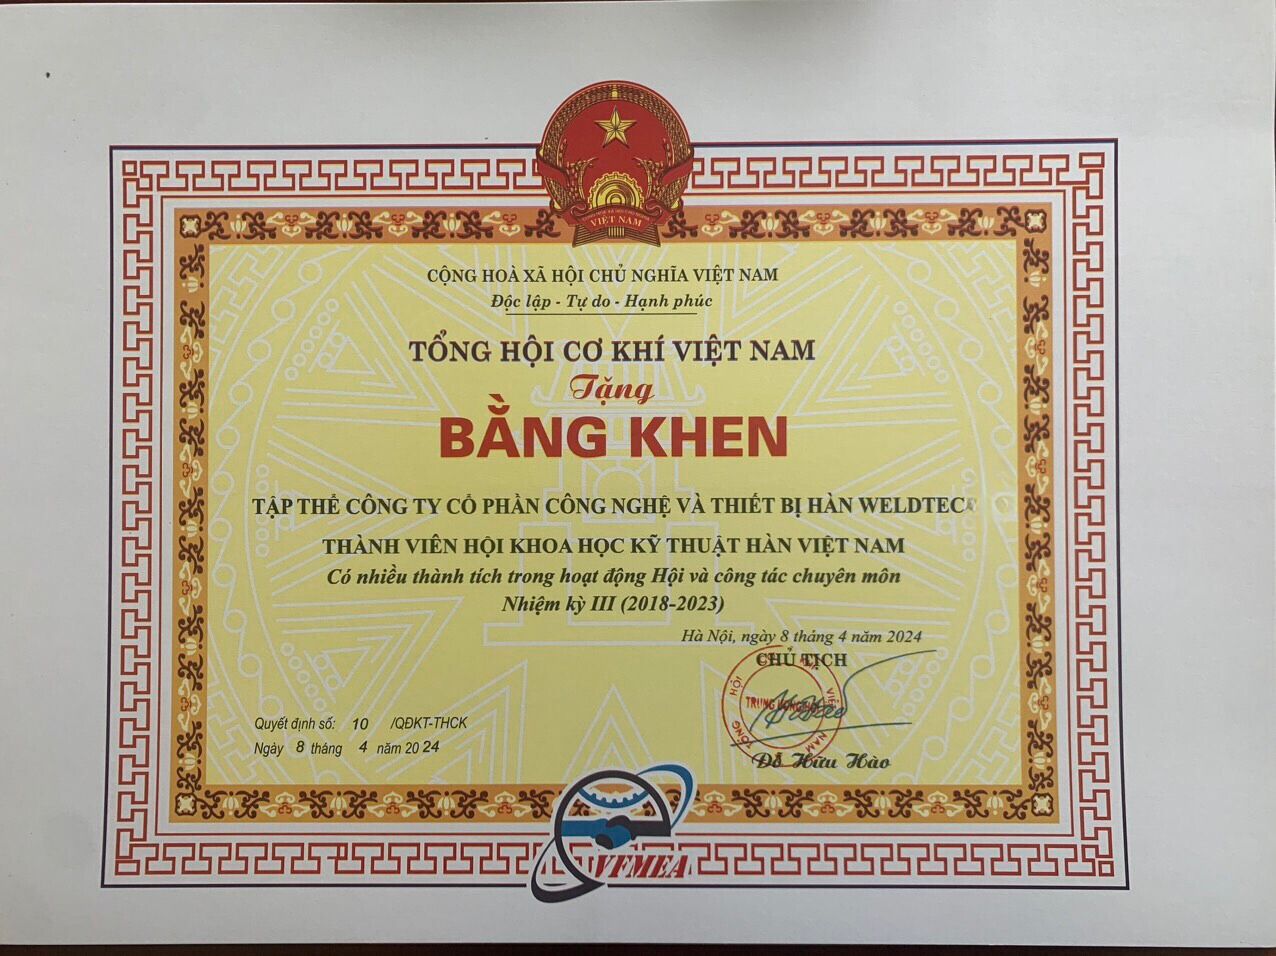 Weldtec vinh dự nhận danh hiệu và bằng khen của Tổng hội Cơ khí Việt Nam